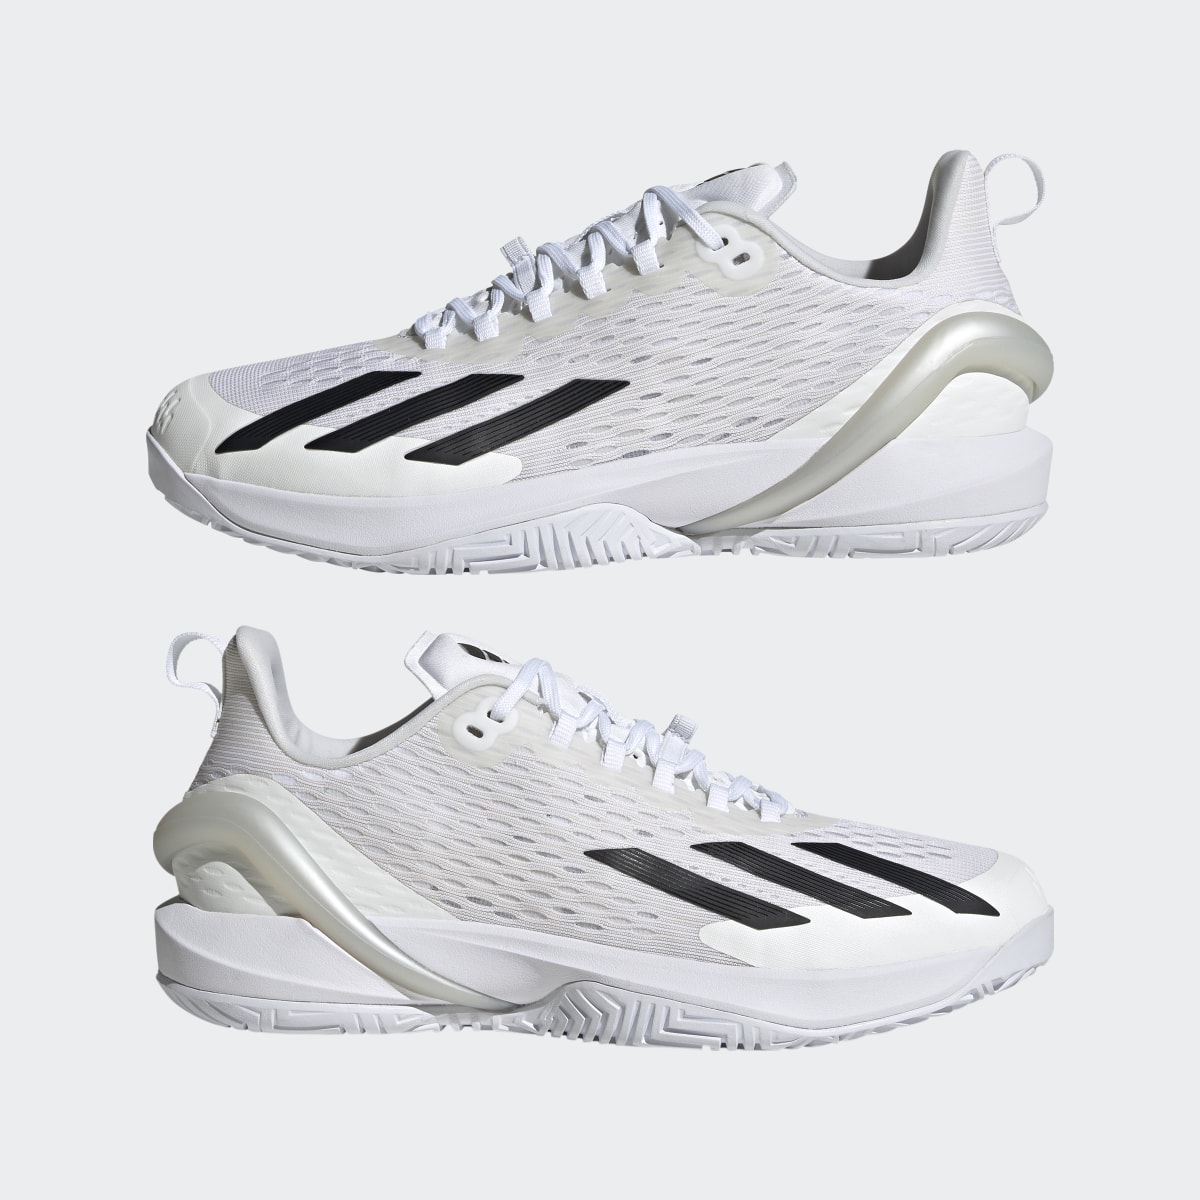 Adidas Adizero Cybersonic Tennis Shoes. 11